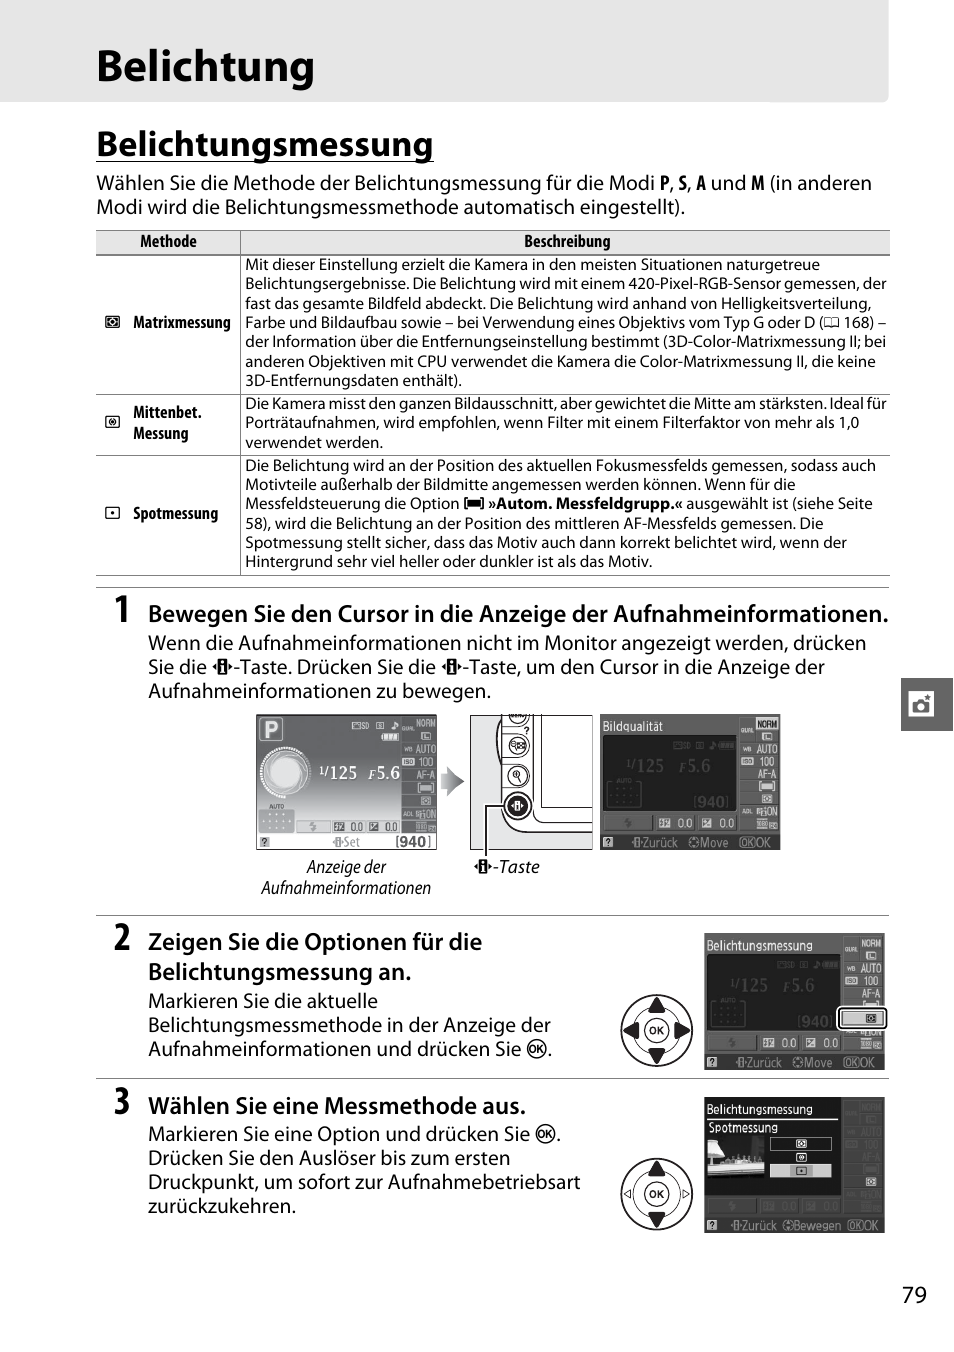 Belichtung, Belichtungsmessung | Nikon D3100 Benutzerhandbuch | Seite 95 / 224